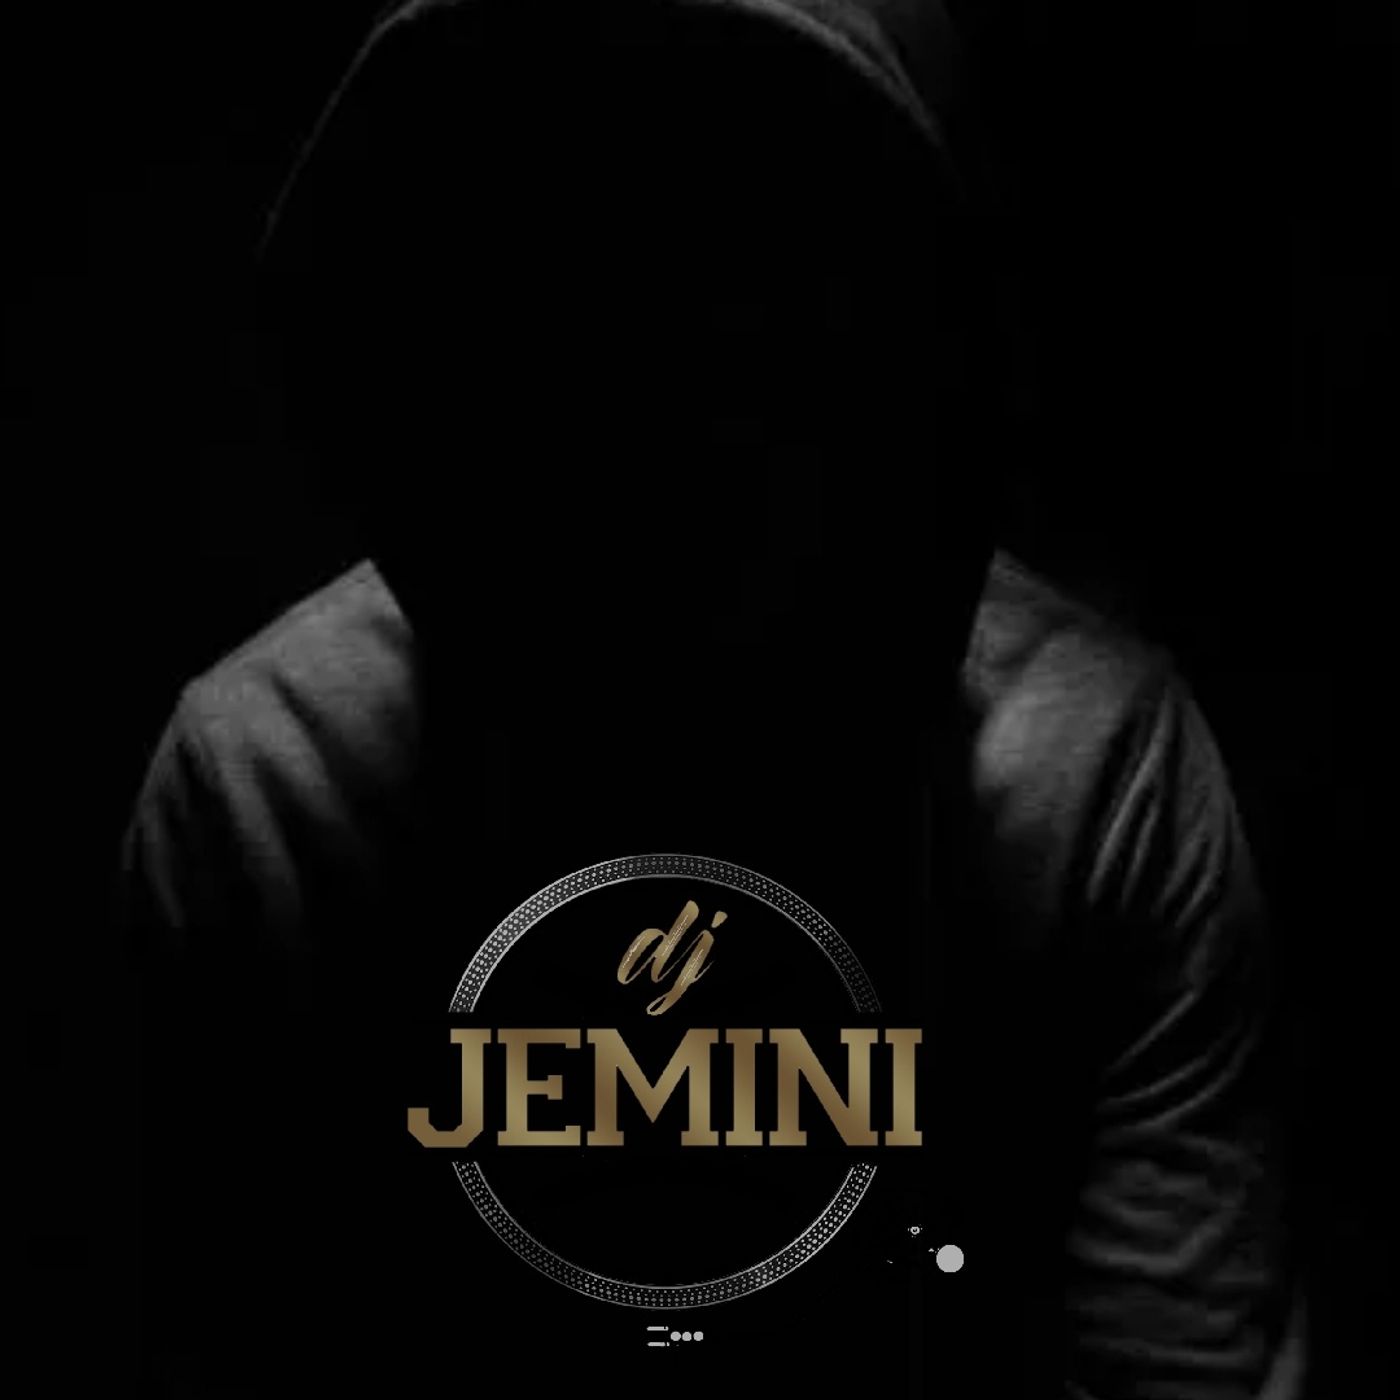 Go DJ Jemini Presents..... Throwaways Vol 5: The 4th Quarter